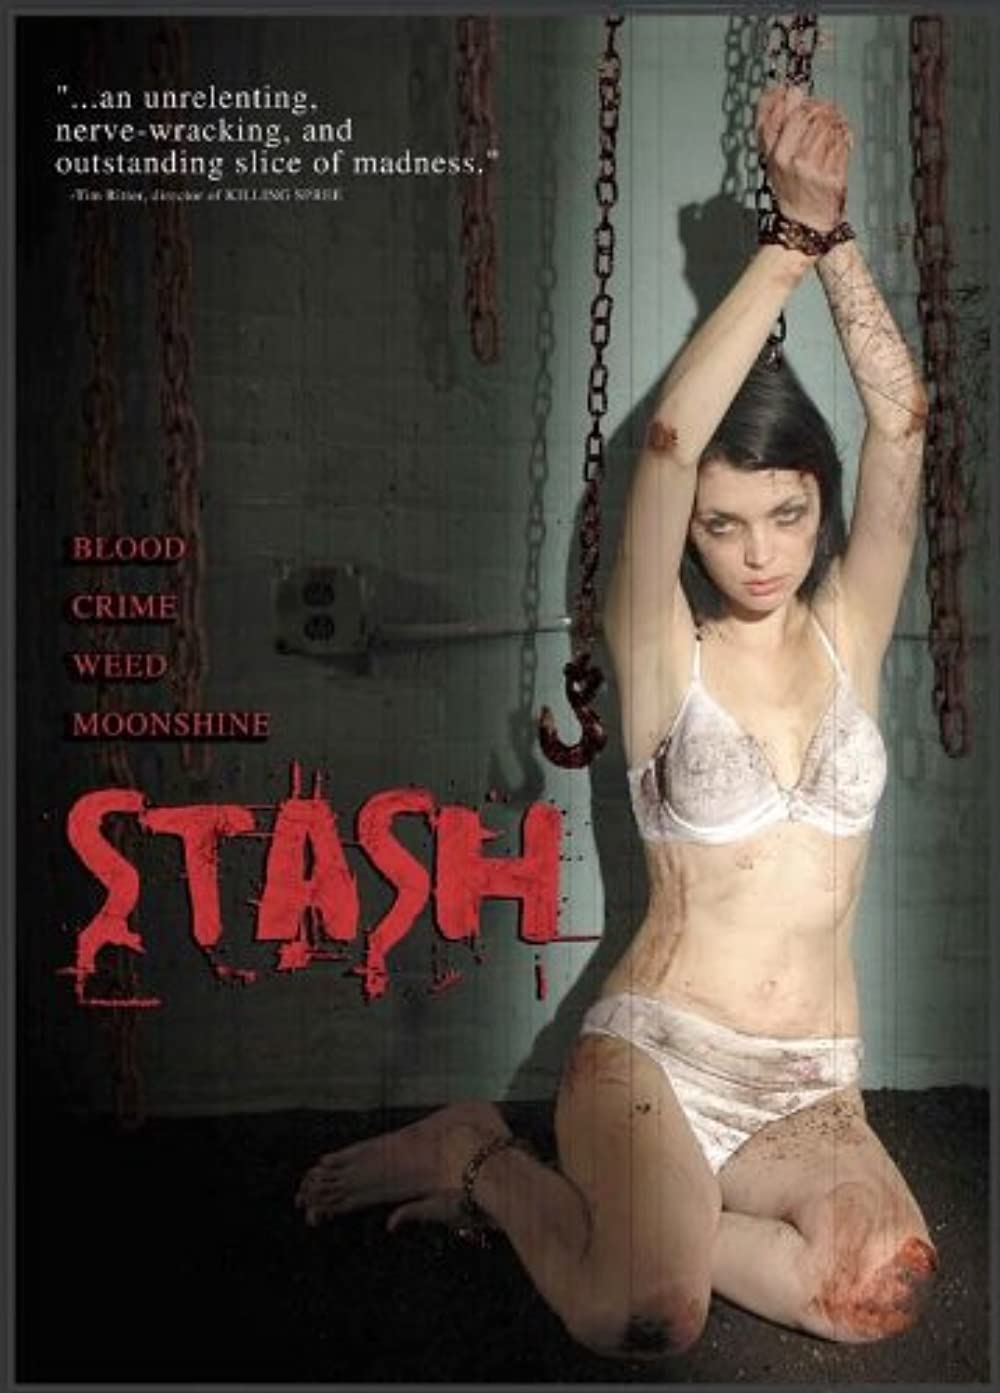 Download Stash Movie | Watch Stash